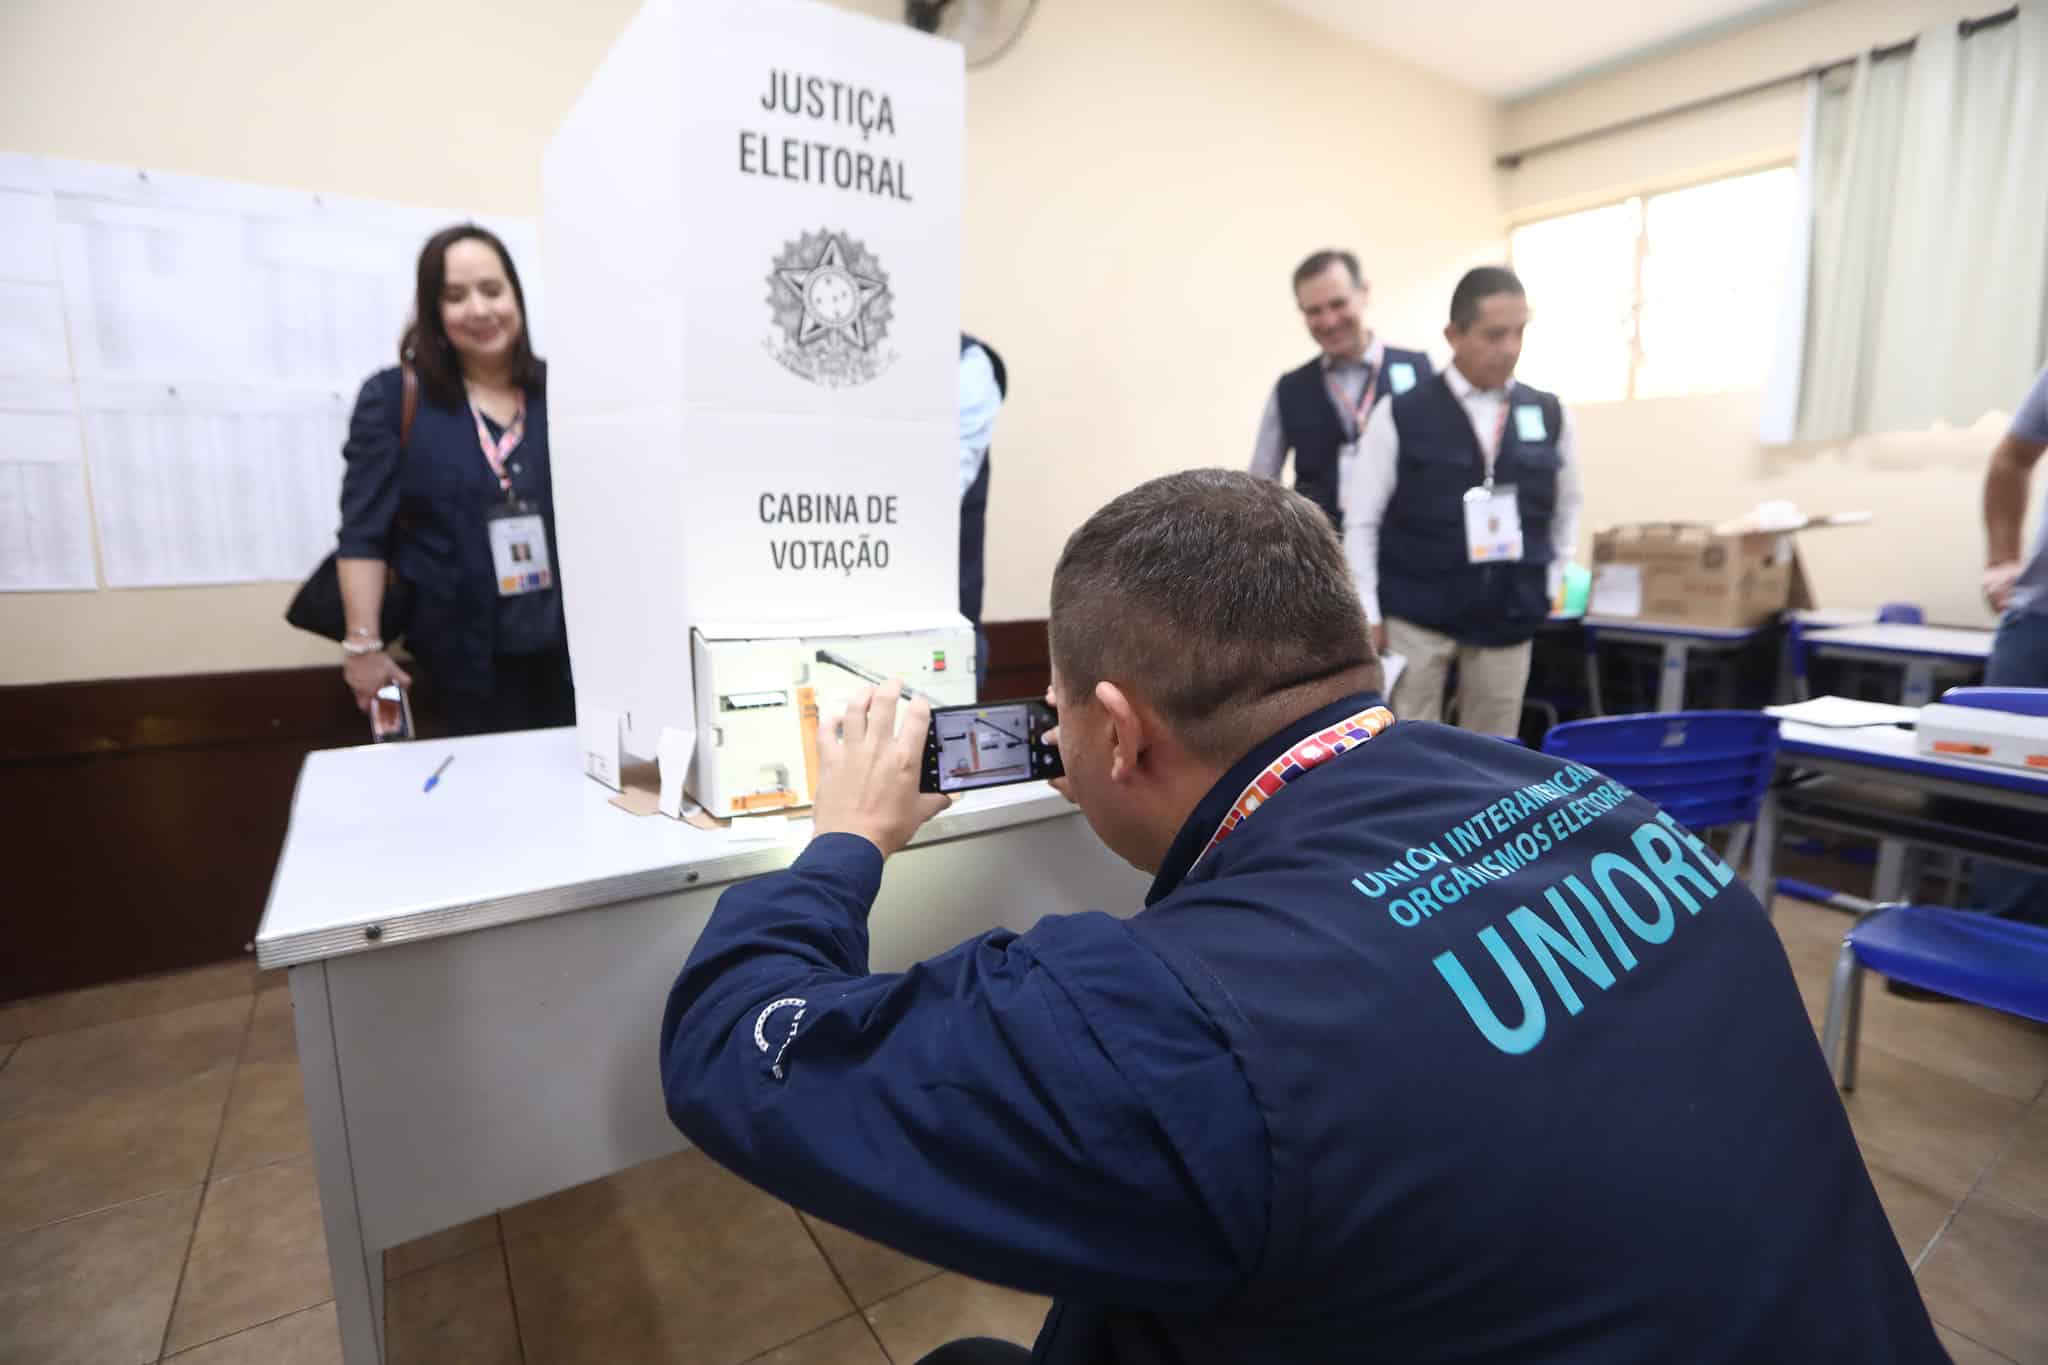 Observadores Internacionais visitam seção eleitoral e acompanham teste de integridade – 02/10/2022
(Foto: Alejandro Zambrana/Secom/TSE)